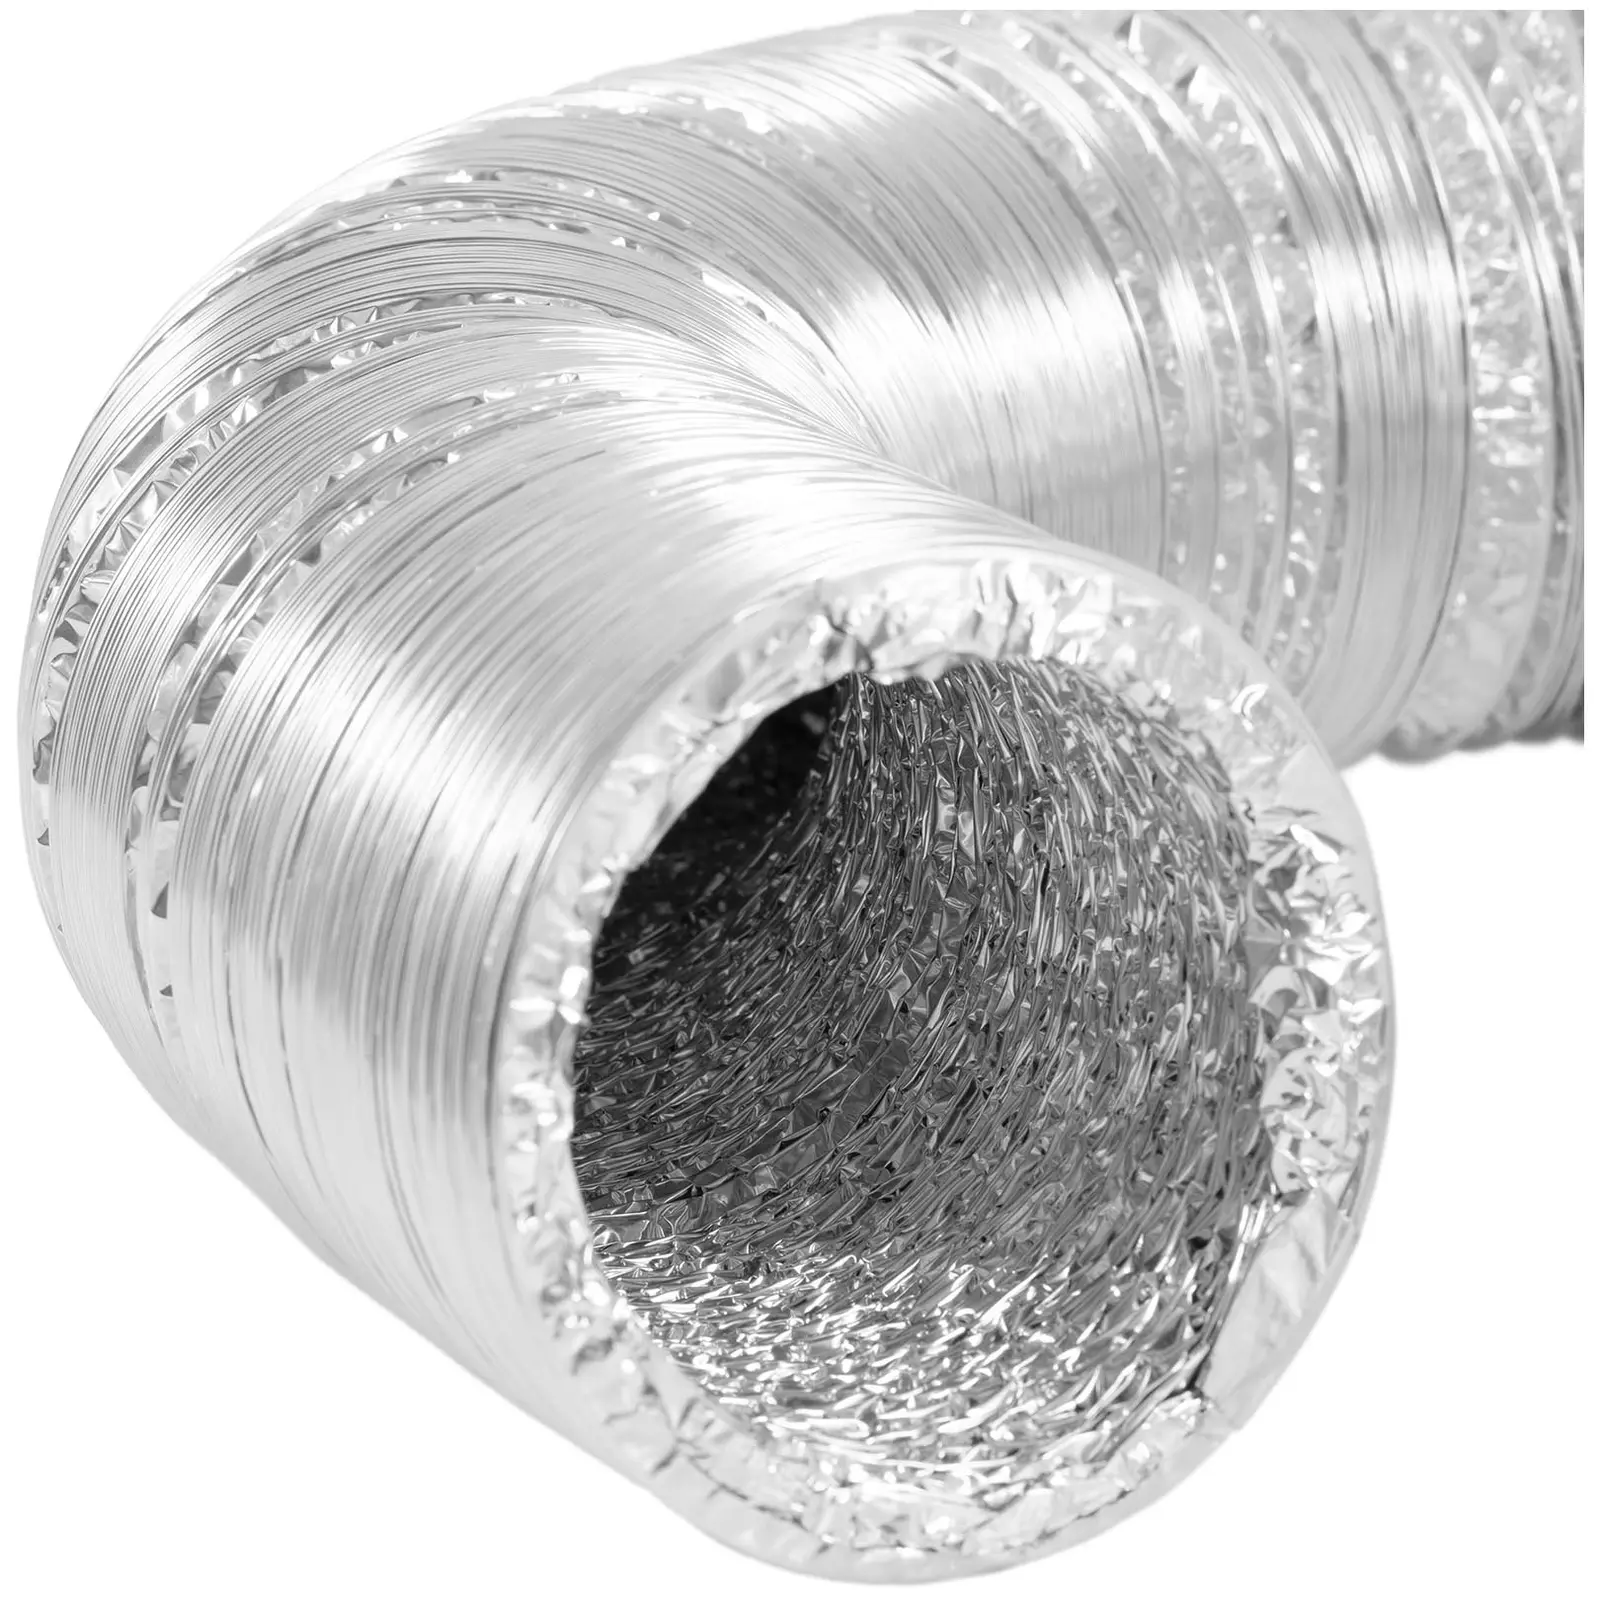 Elszívó tömlő - Ø 100 mm - 10 m hosszú - alumínium